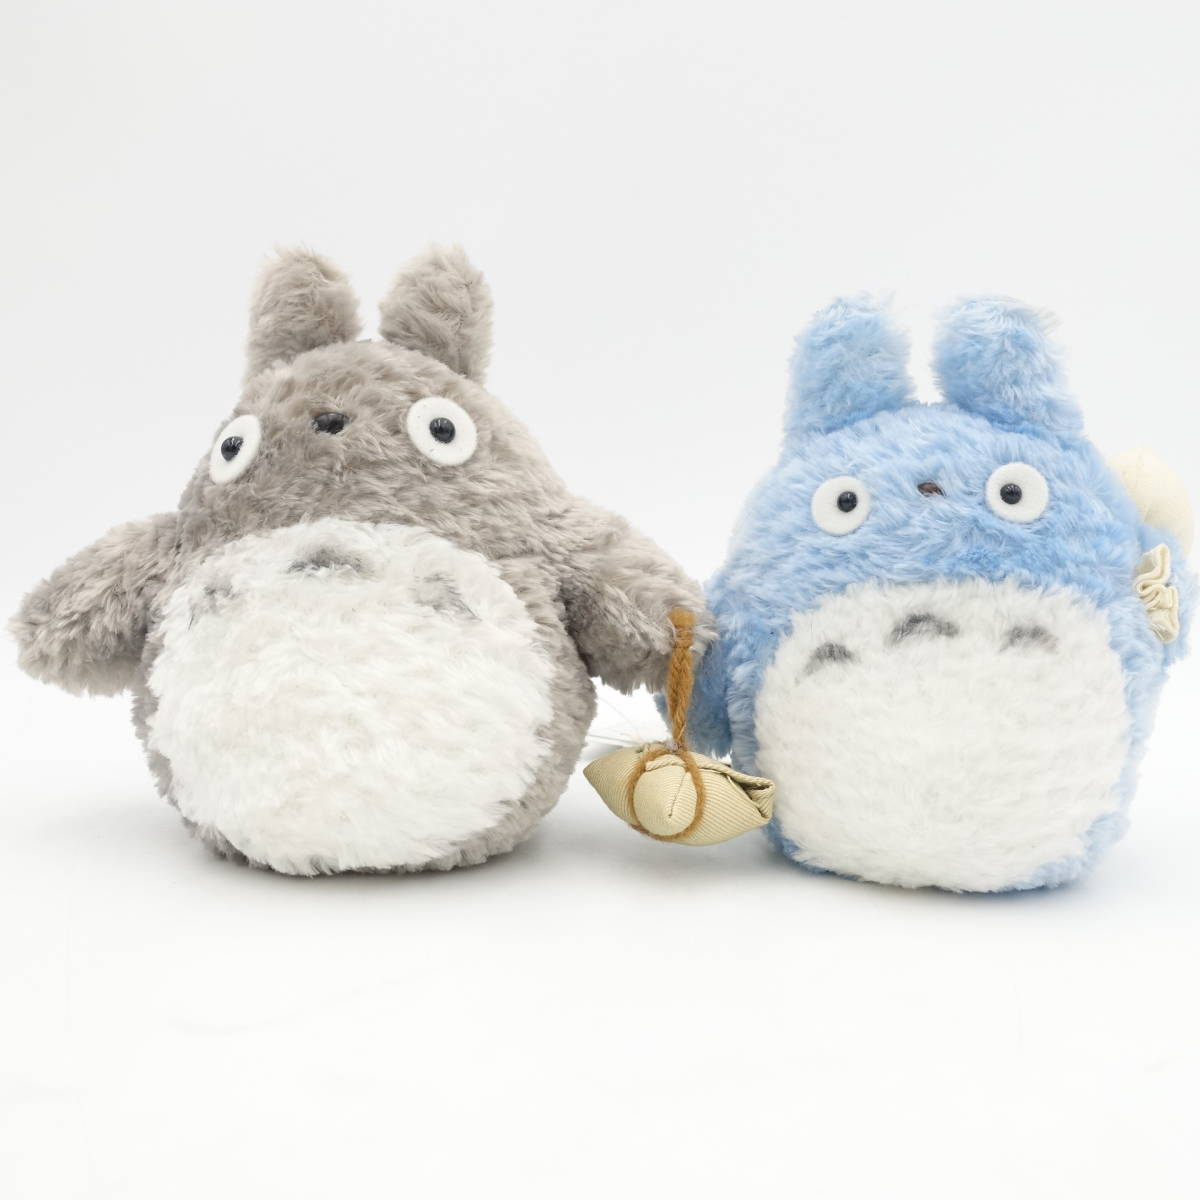  Tonari no Totoro средний to Toro .... мягкая игрушка 2 позиций комплект с биркой Ghibli герой товары /13306